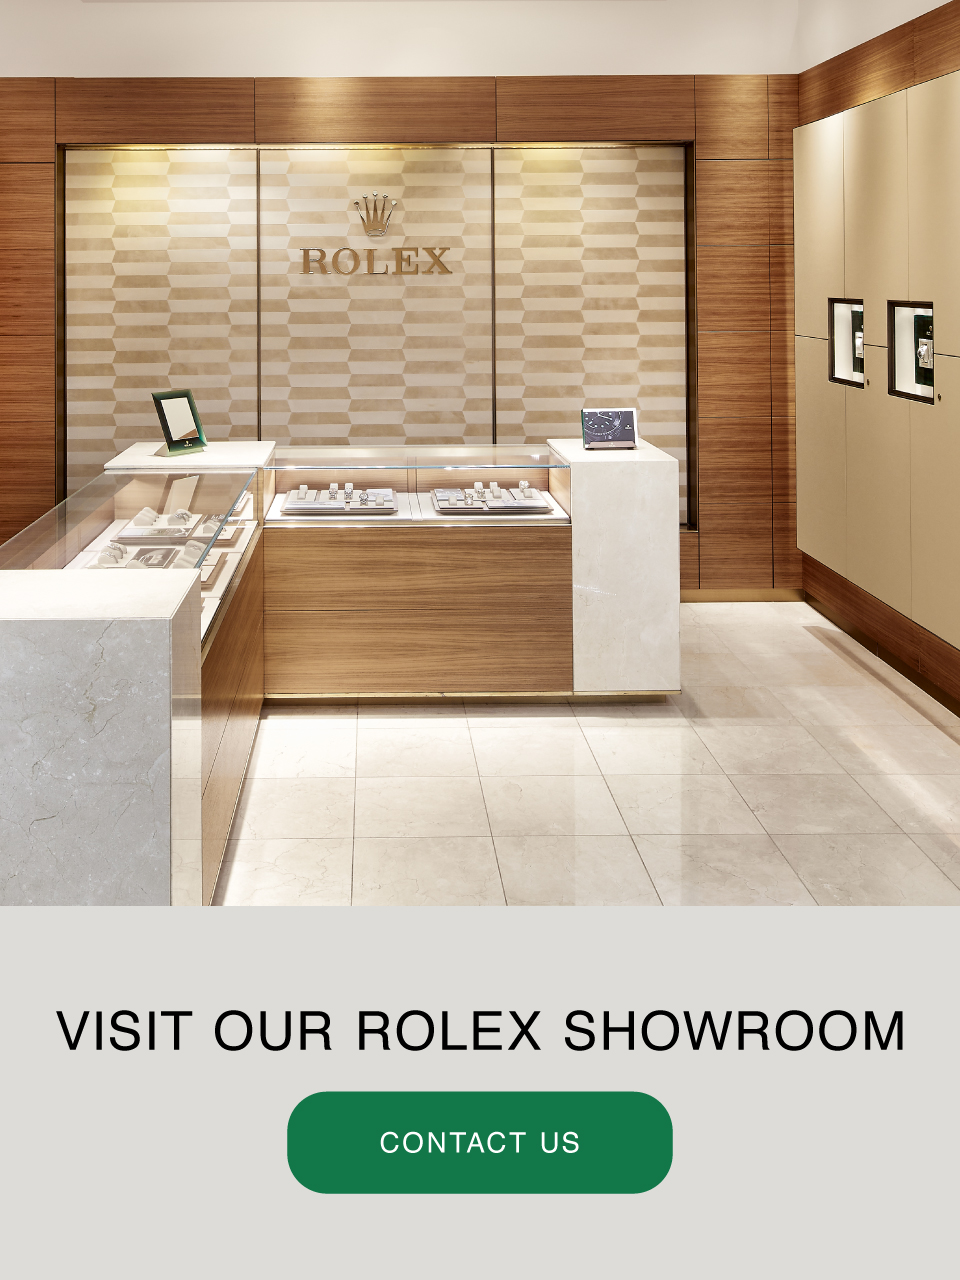 Rolex Shop